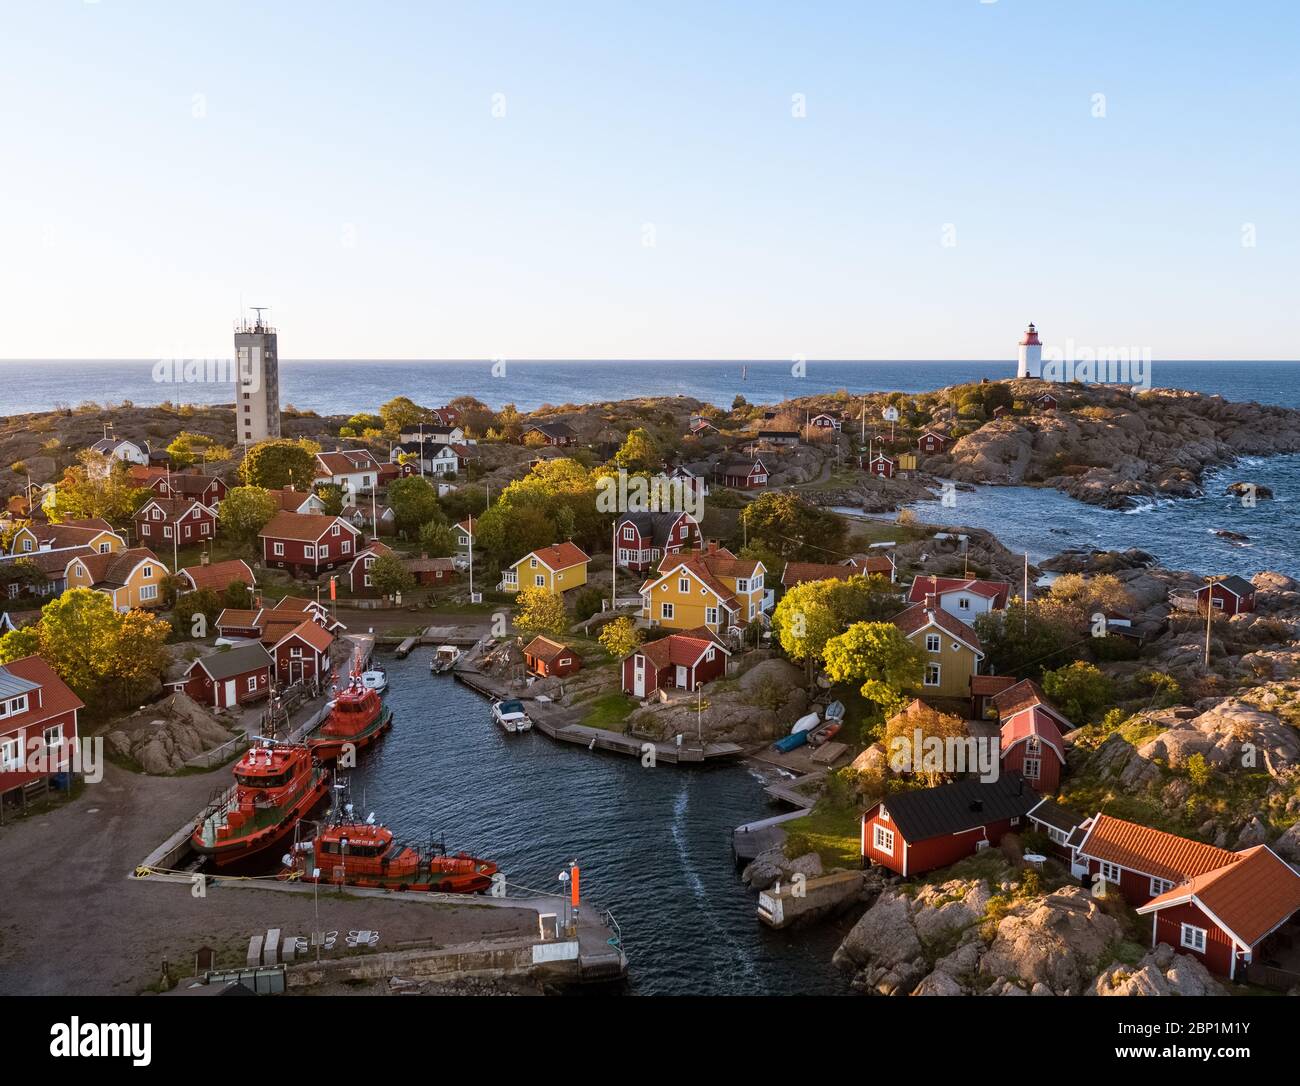 Landsort est le nom d'un phare sur l'île d'Öja. Le petit village est l'une des destinations les plus populaires de l'archipel de Stockholm. Banque D'Images